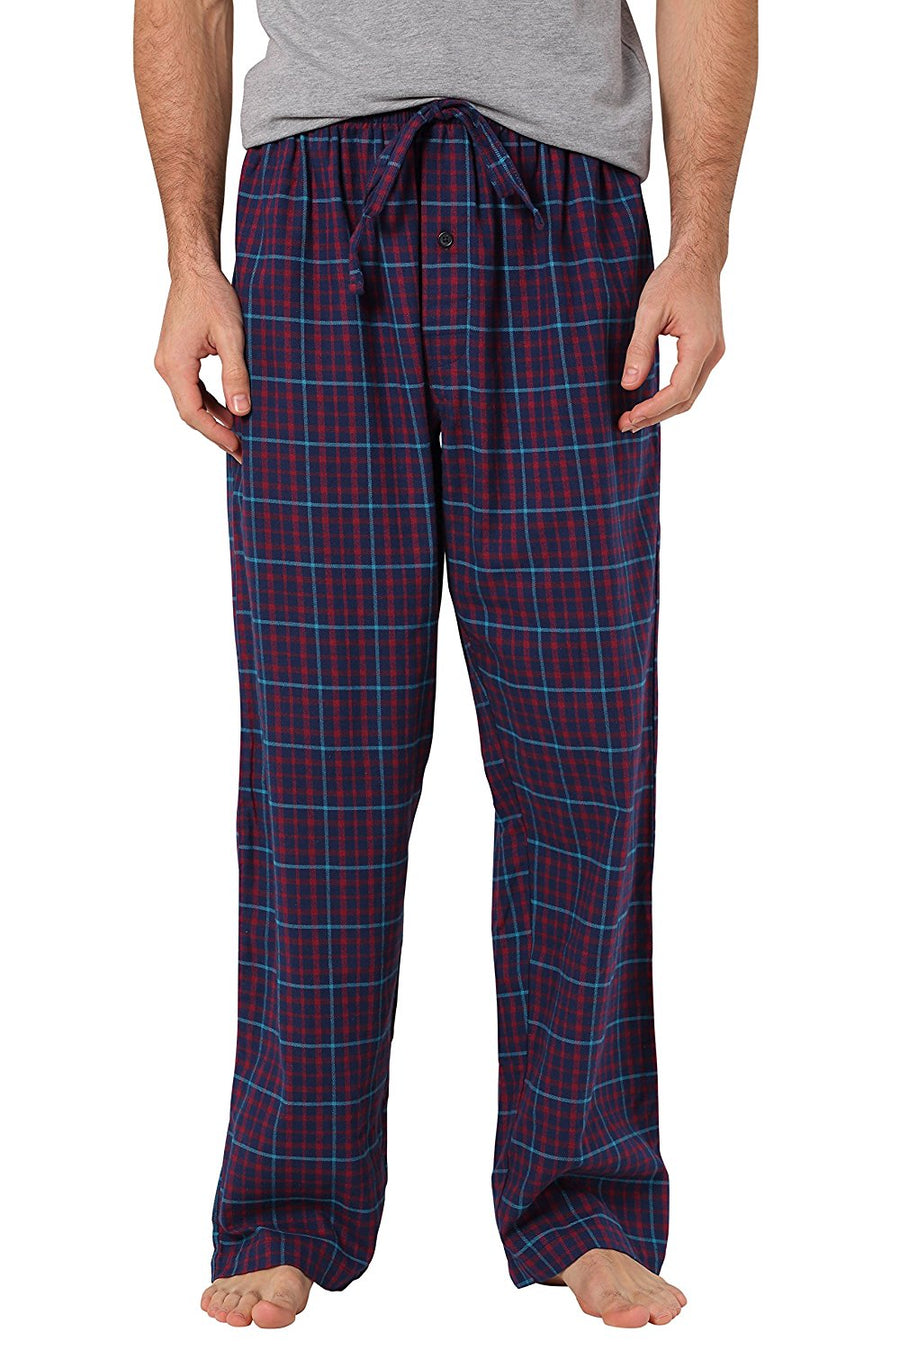 CYZ Men's 100% Cotton Super Soft Flannel Plaid Pajama Pants – CYZ ...